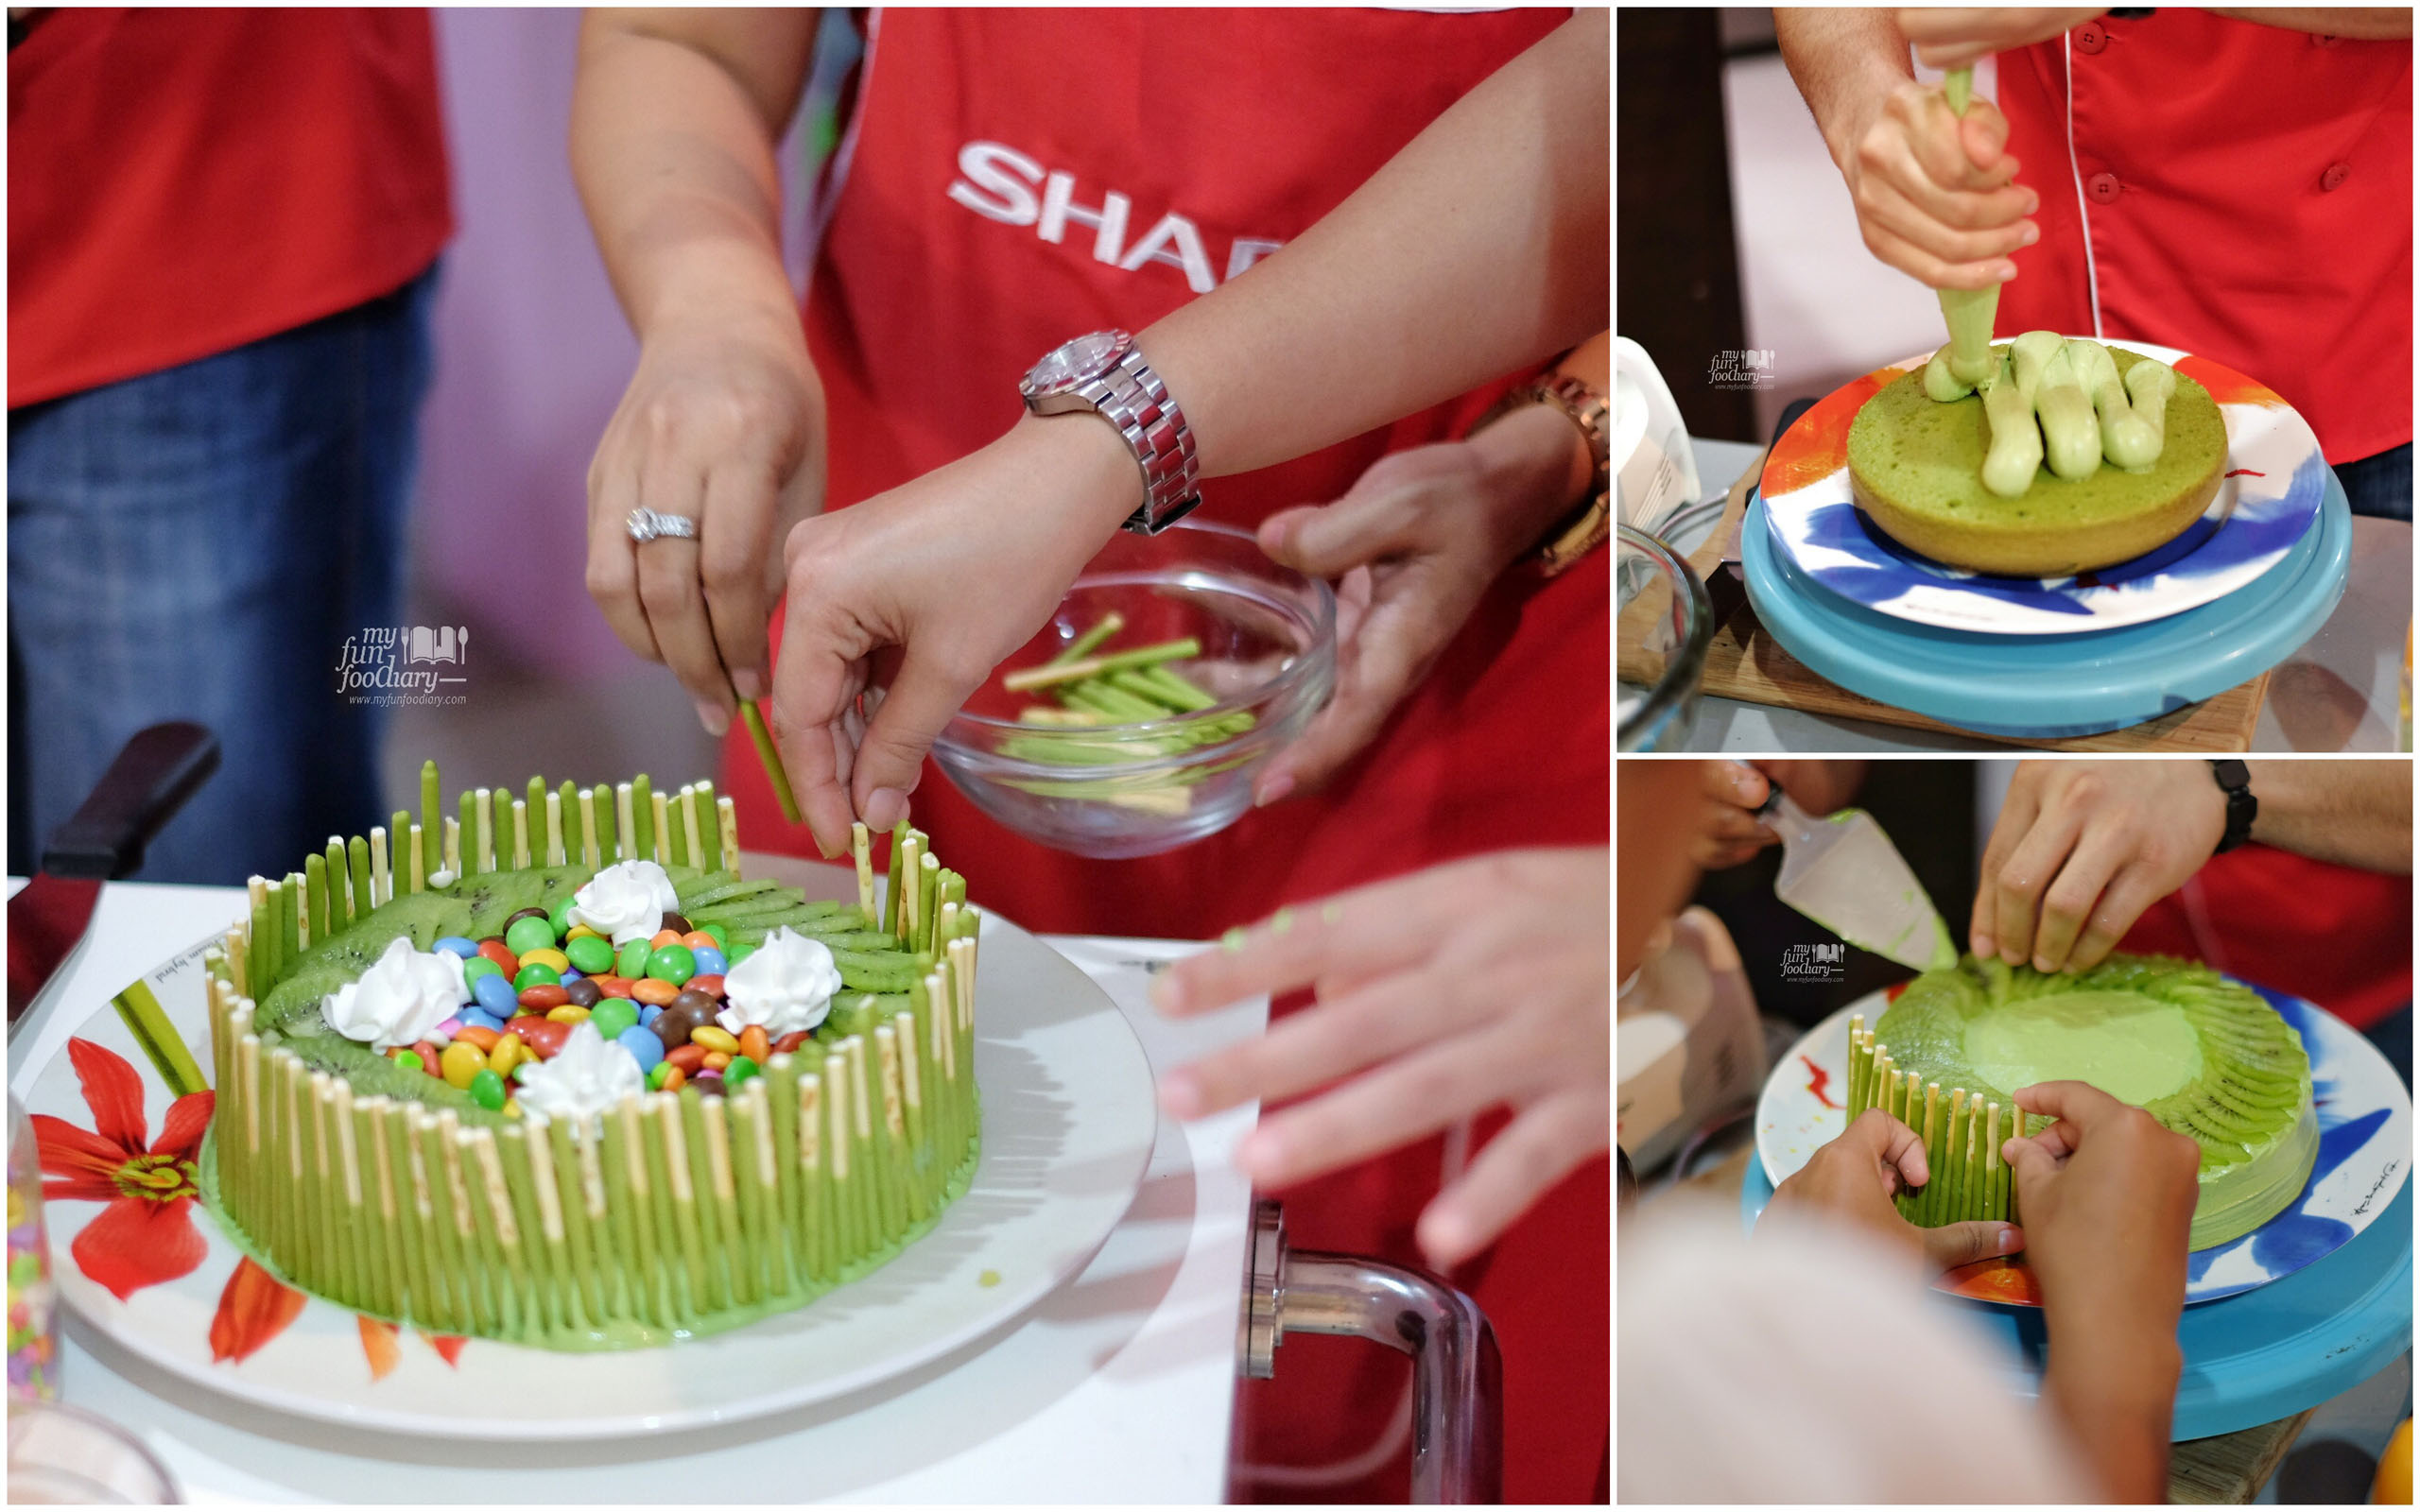 Decorating the matcha cake by Myfunfoodiary